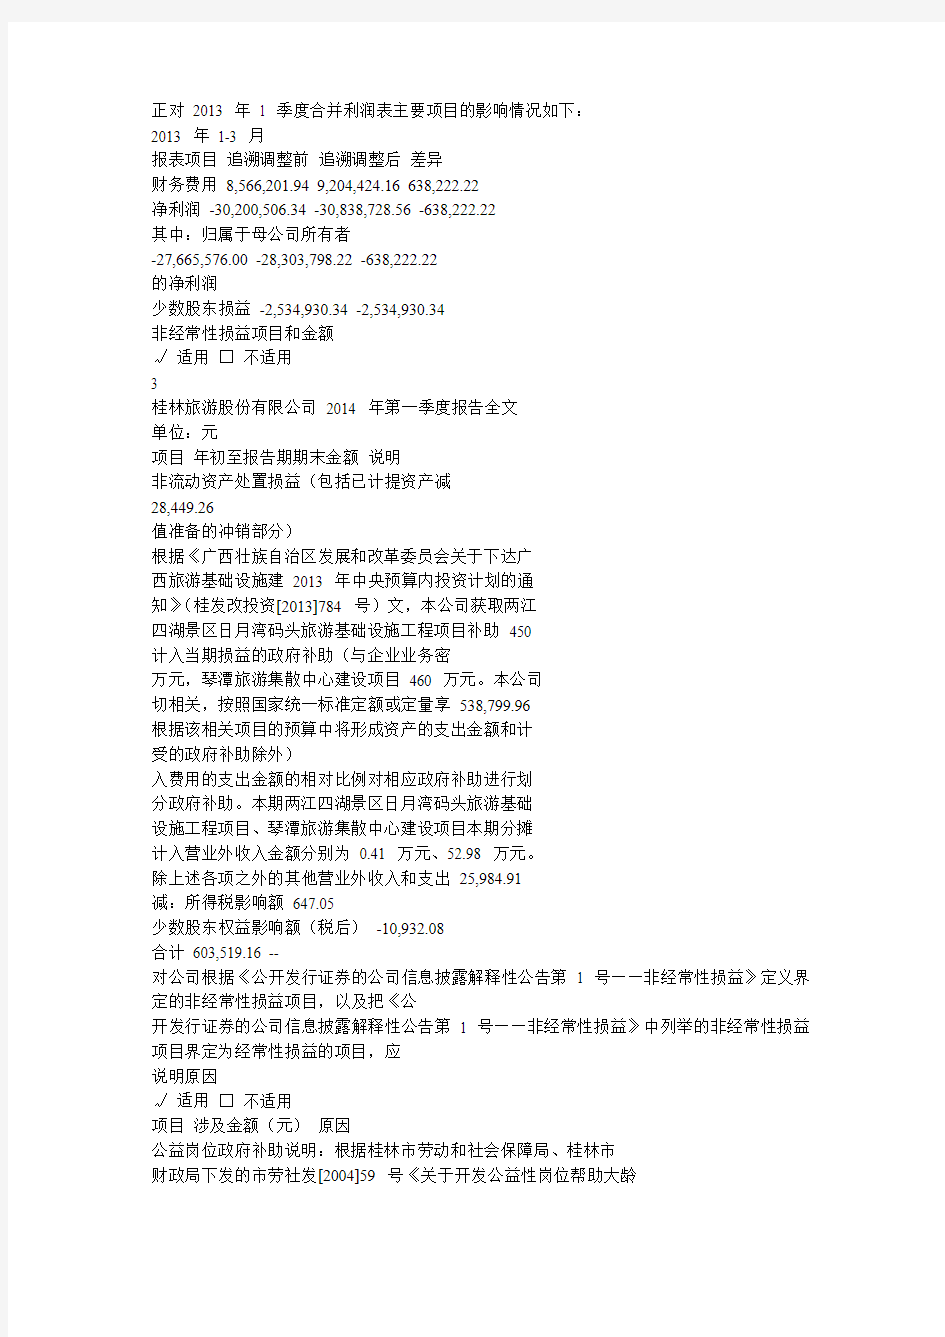 桂林旅游股份有限公司 2014 年第一季度报告全文